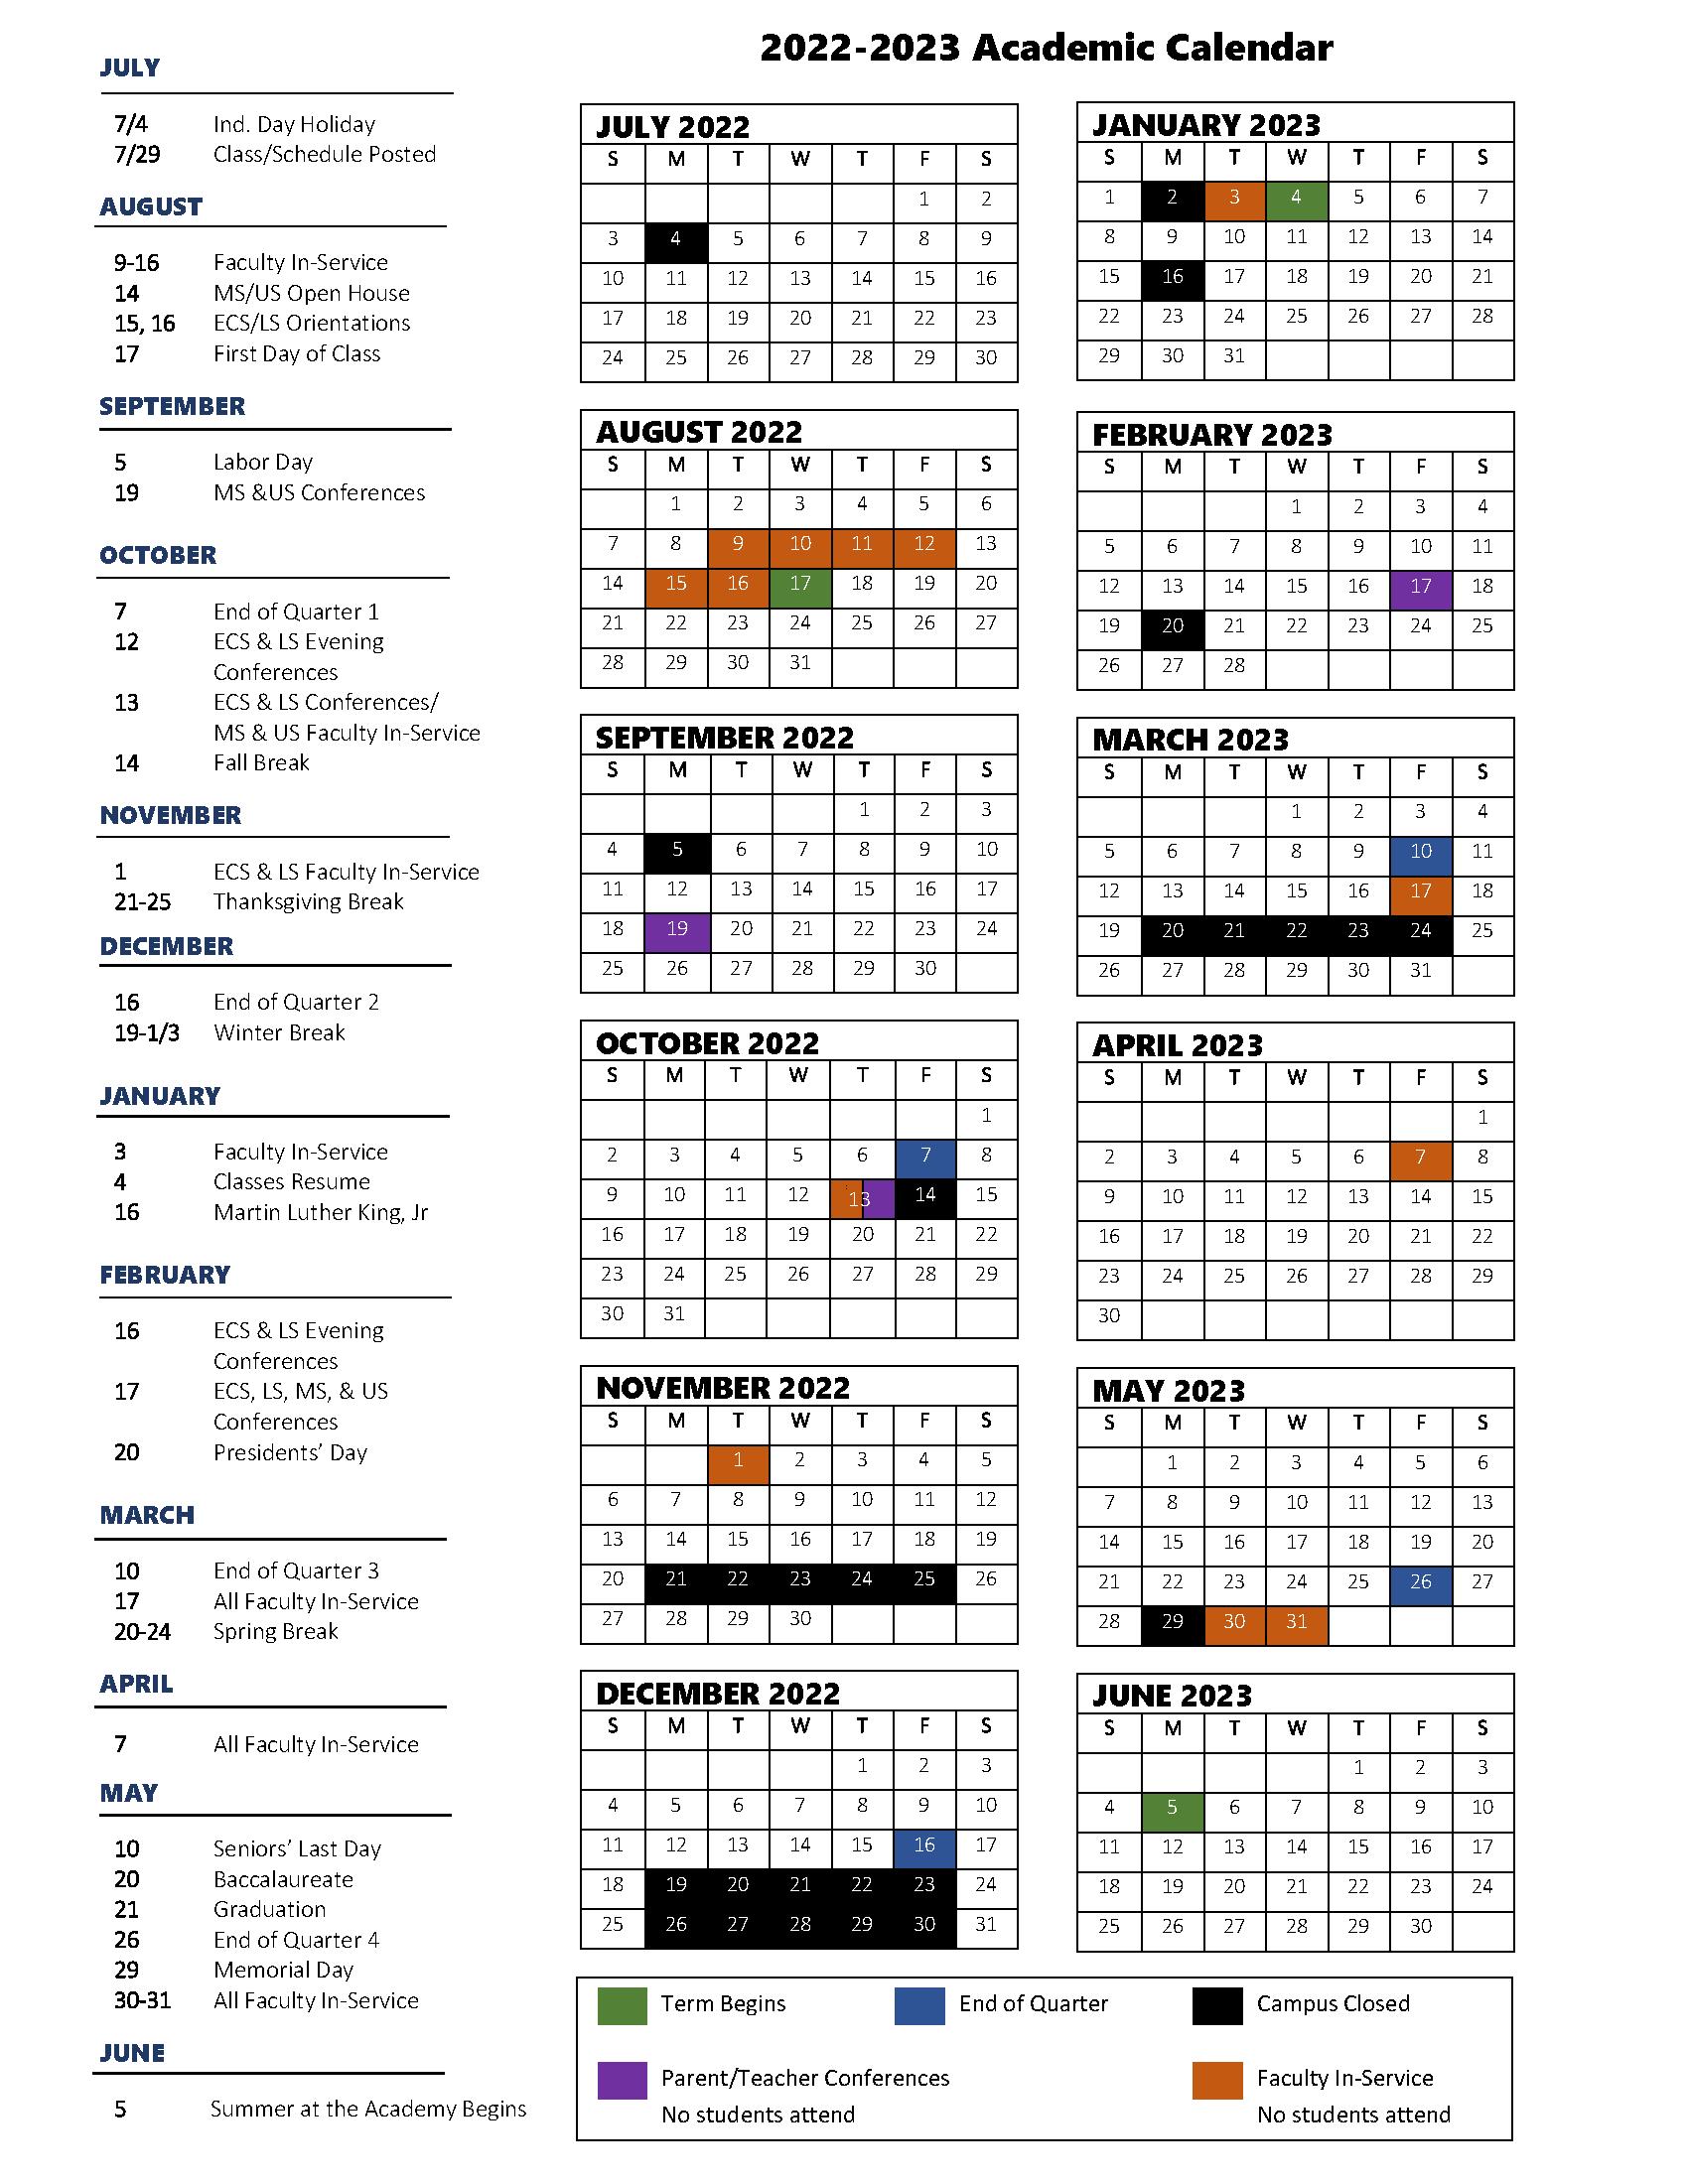 nsc-academic-calendar-2022-2023-calendar2023-net-riset